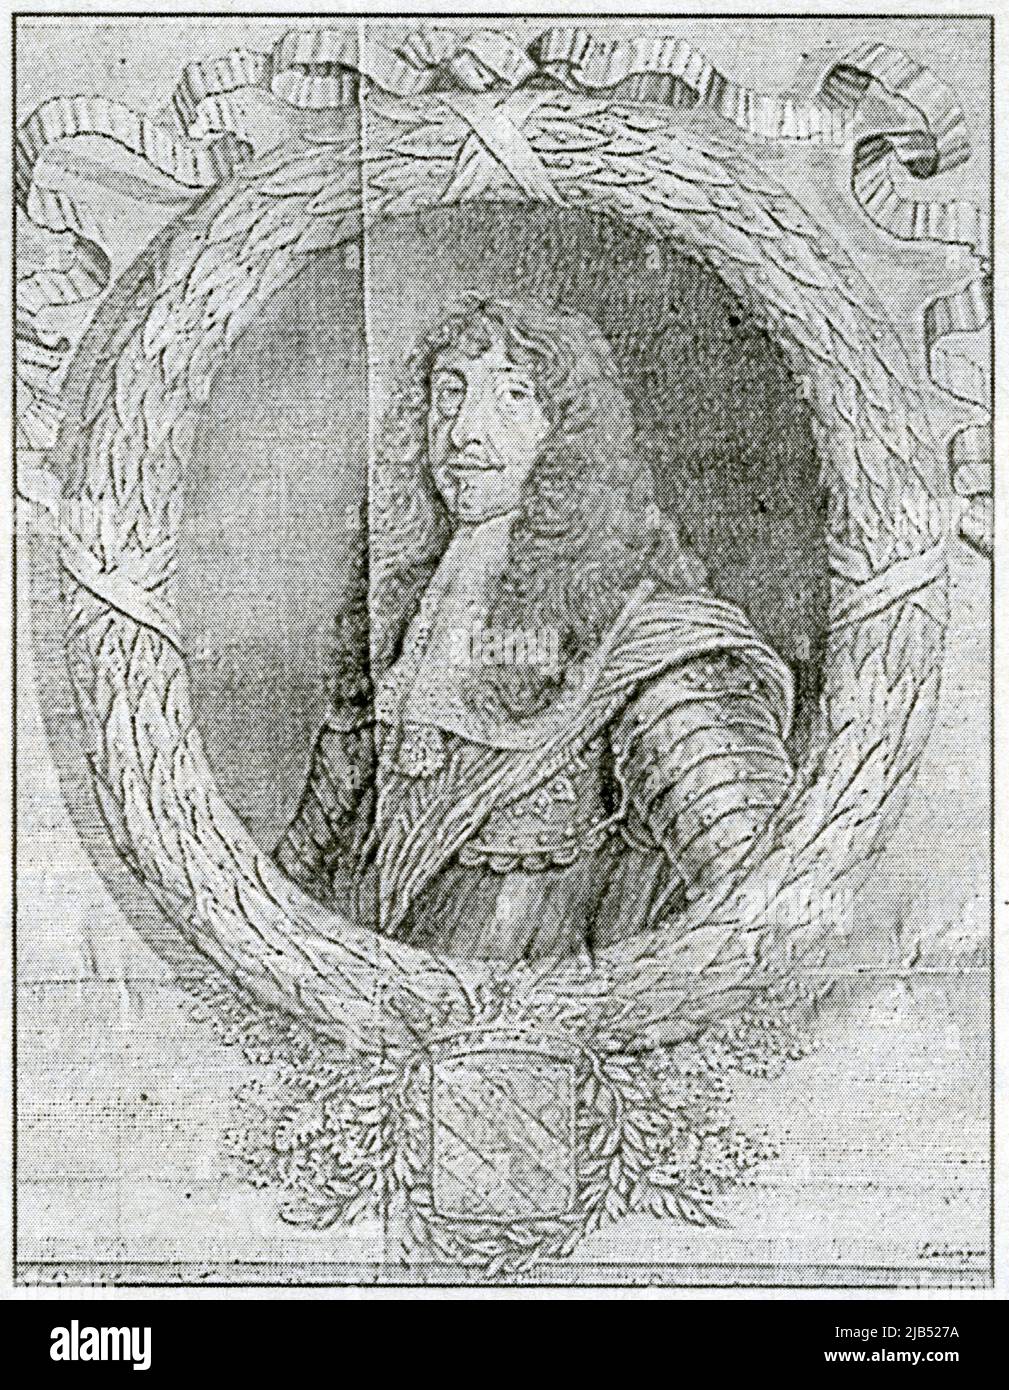 Gillion Othon, marchese de Trazegnies, 1598-1669, gouverneur de Tournai et d'Artois. Gravure d'après Ladam. Foto Stock